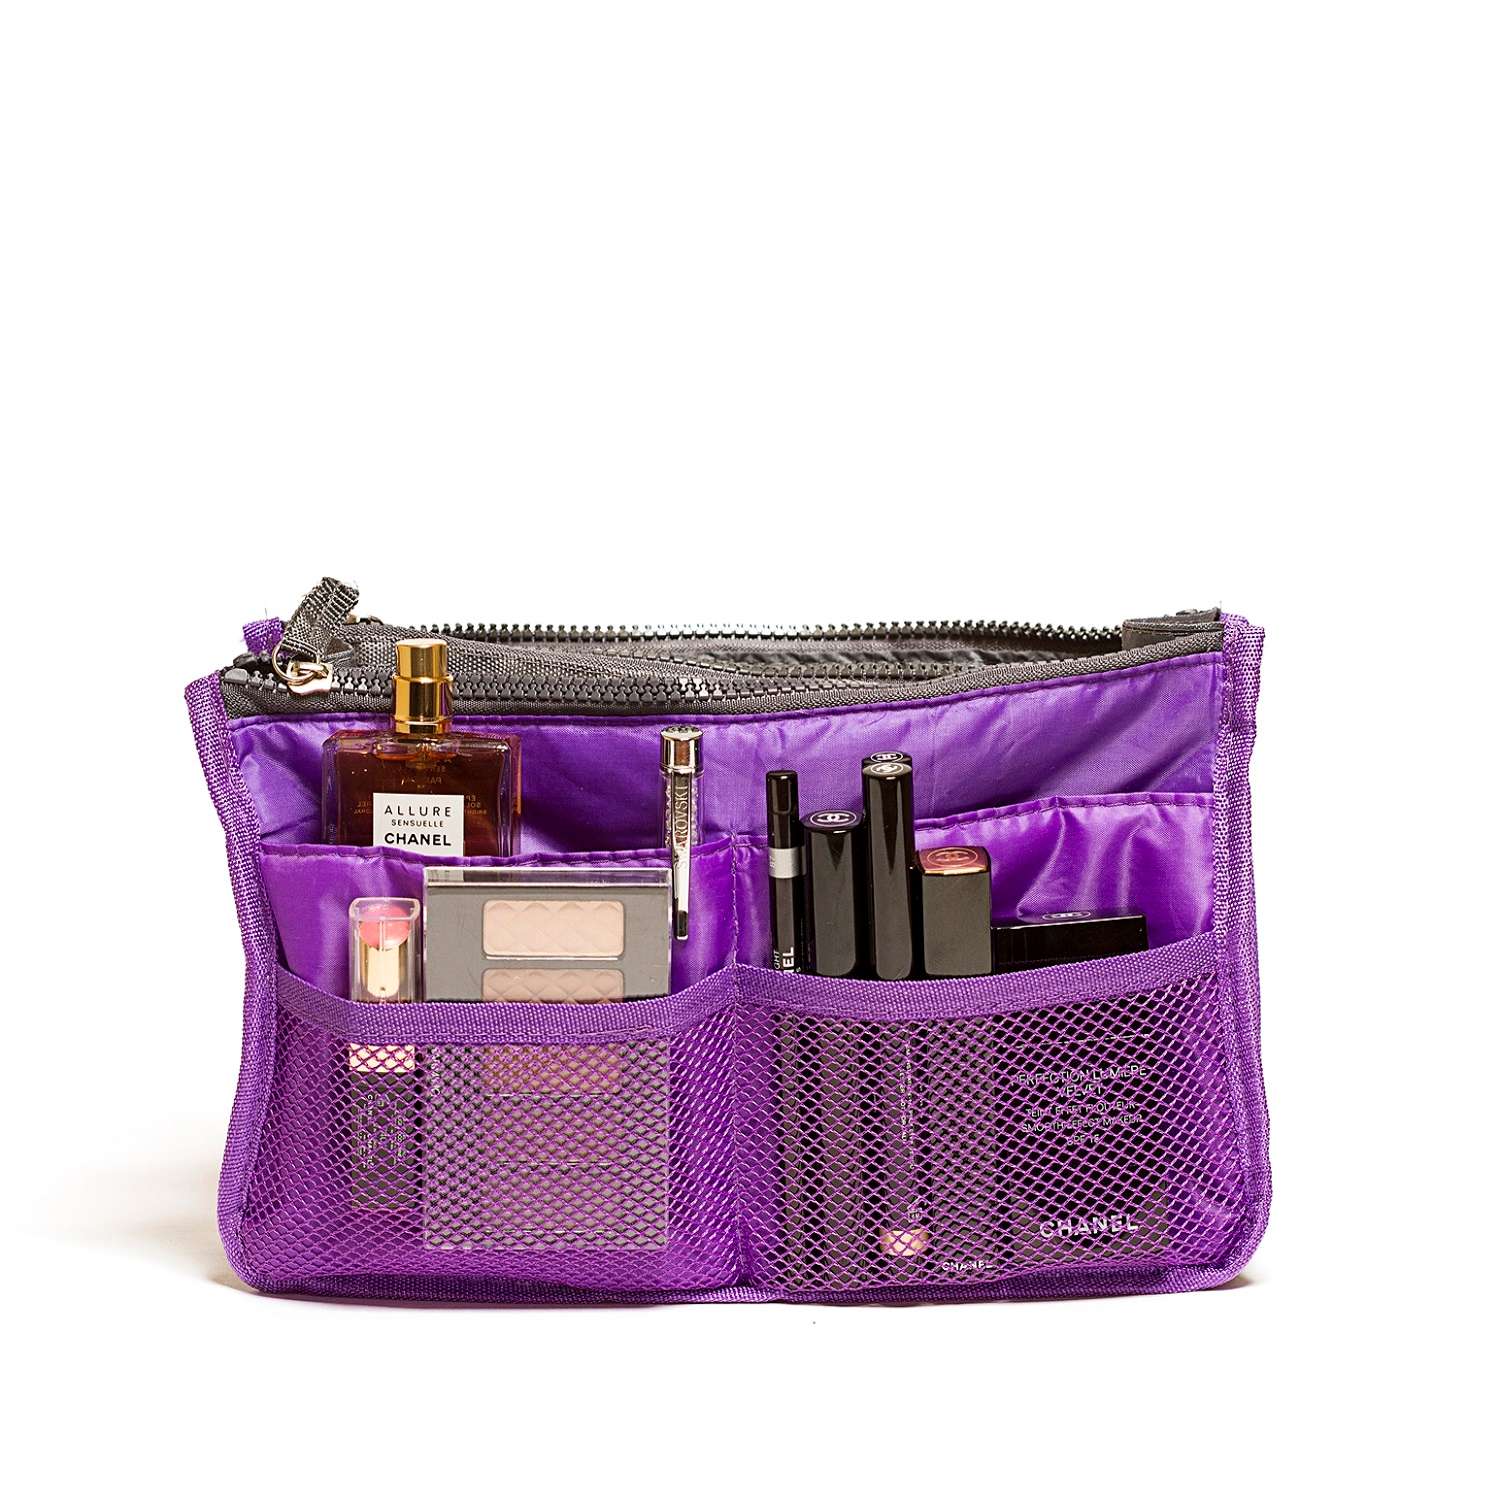 Органайзер Homsu для сумки фиолетовый - фото 1